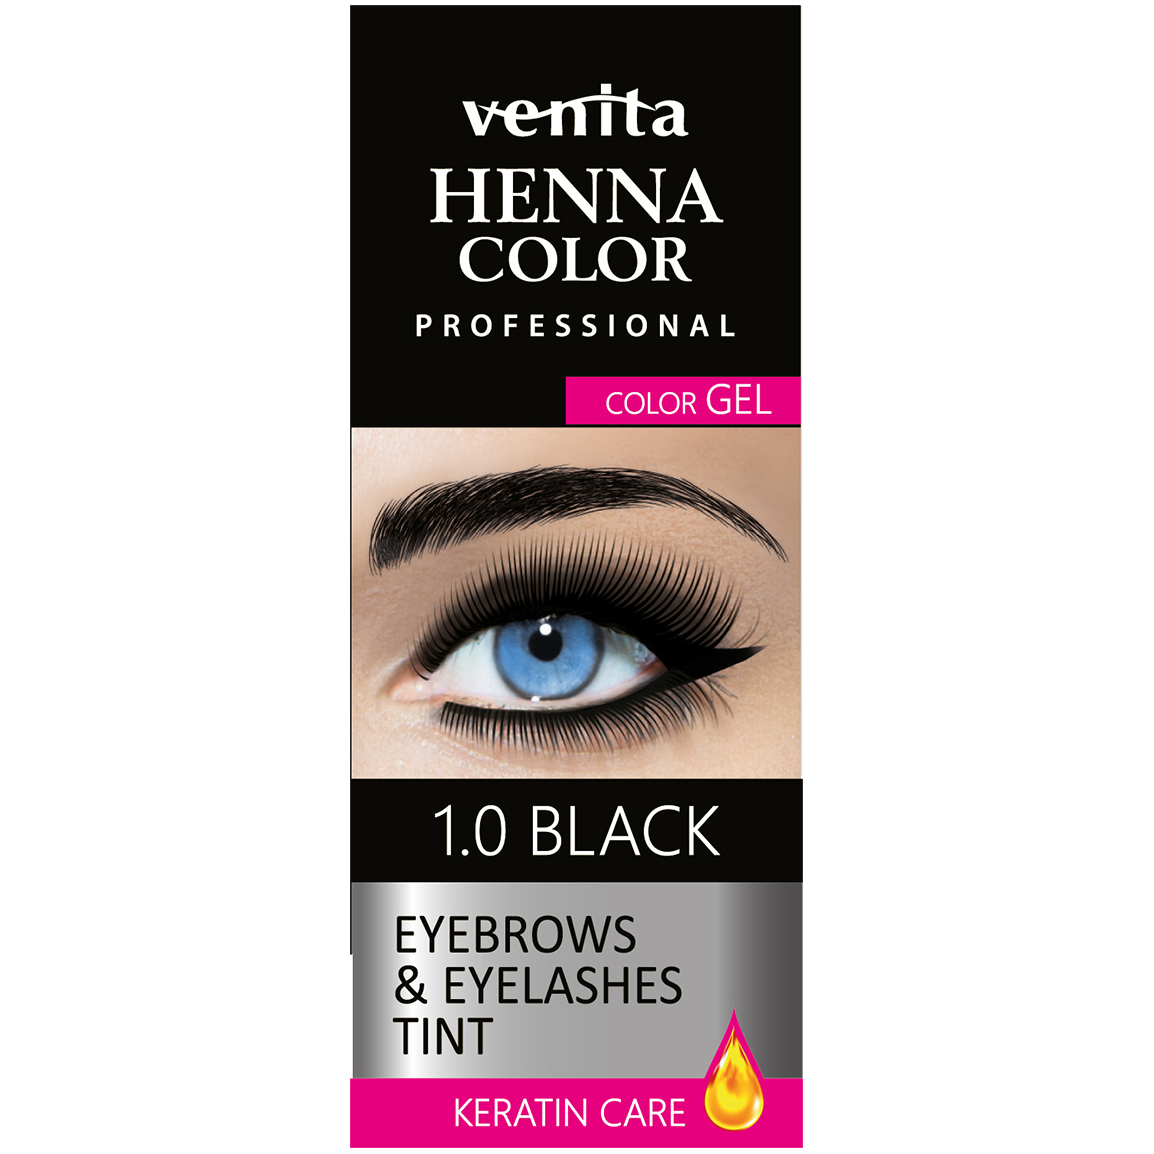 Venita Henna Color хна в геле для бровей 1.0 черная, 30 г